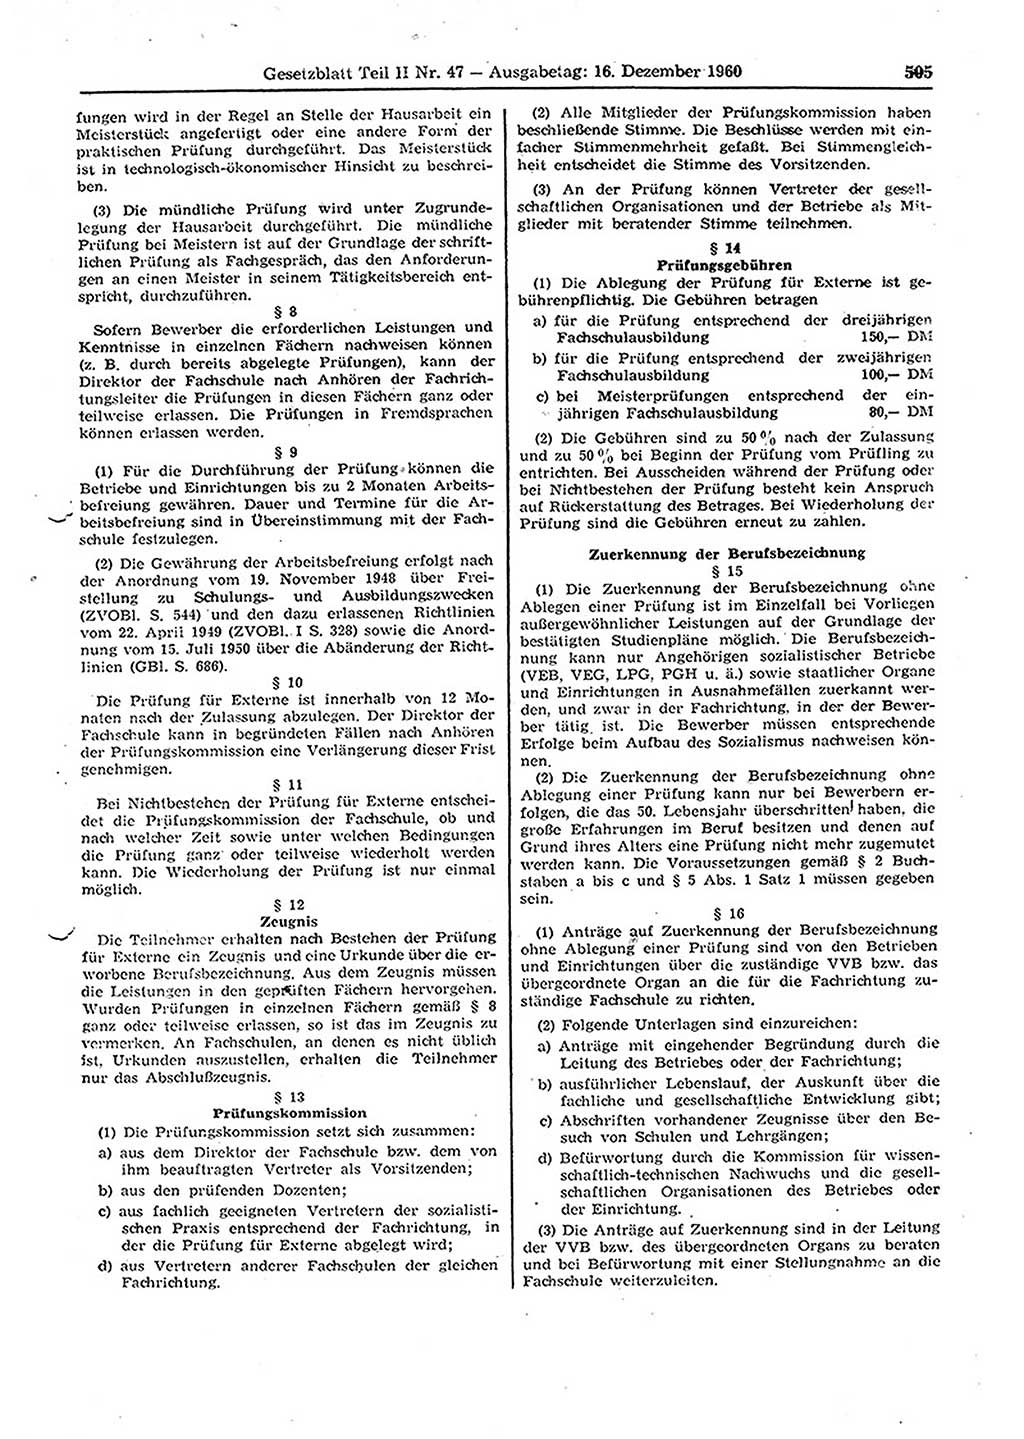 Gesetzblatt (GBl.) der Deutschen Demokratischen Republik (DDR) Teil ⅠⅠ 1960, Seite 505 (GBl. DDR ⅠⅠ 1960, S. 505)